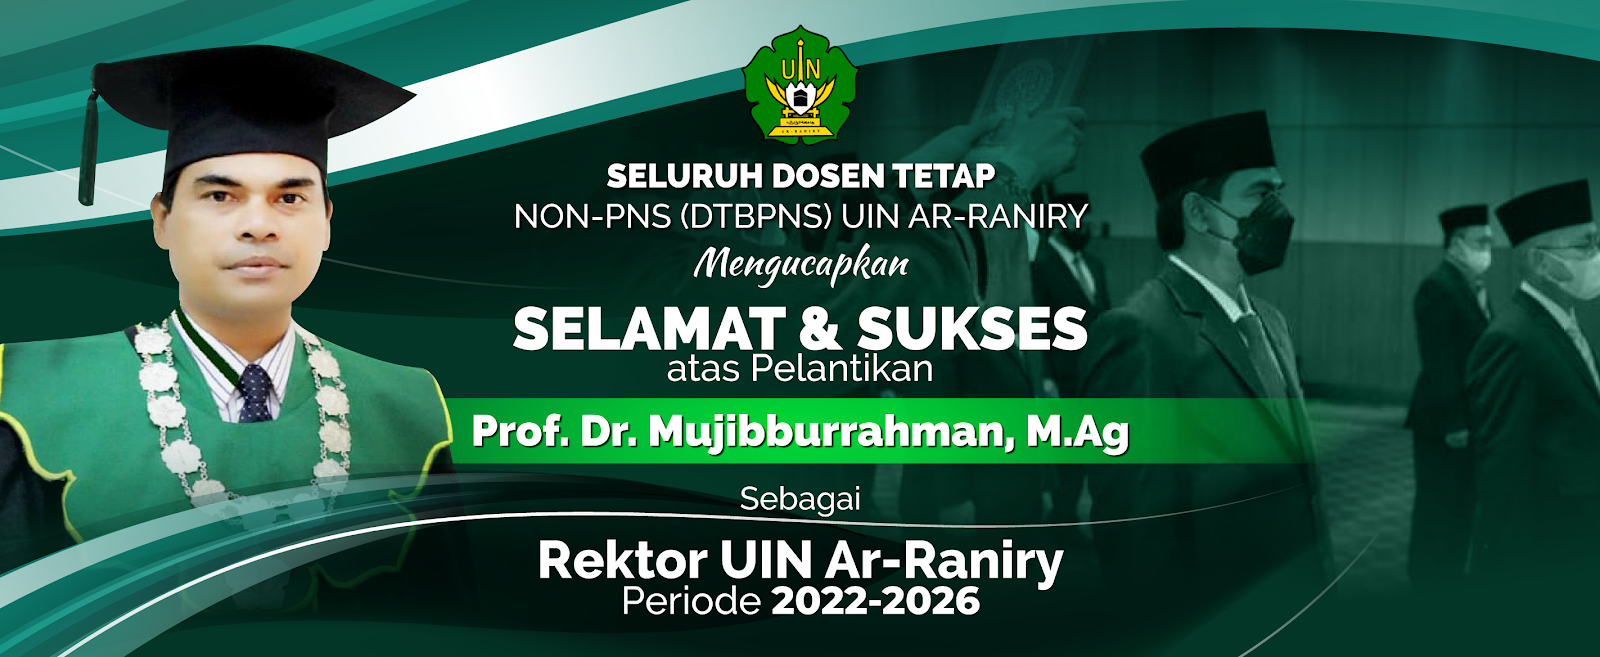 Selamat Pelantikan Rektor UIN Ar-Raniry